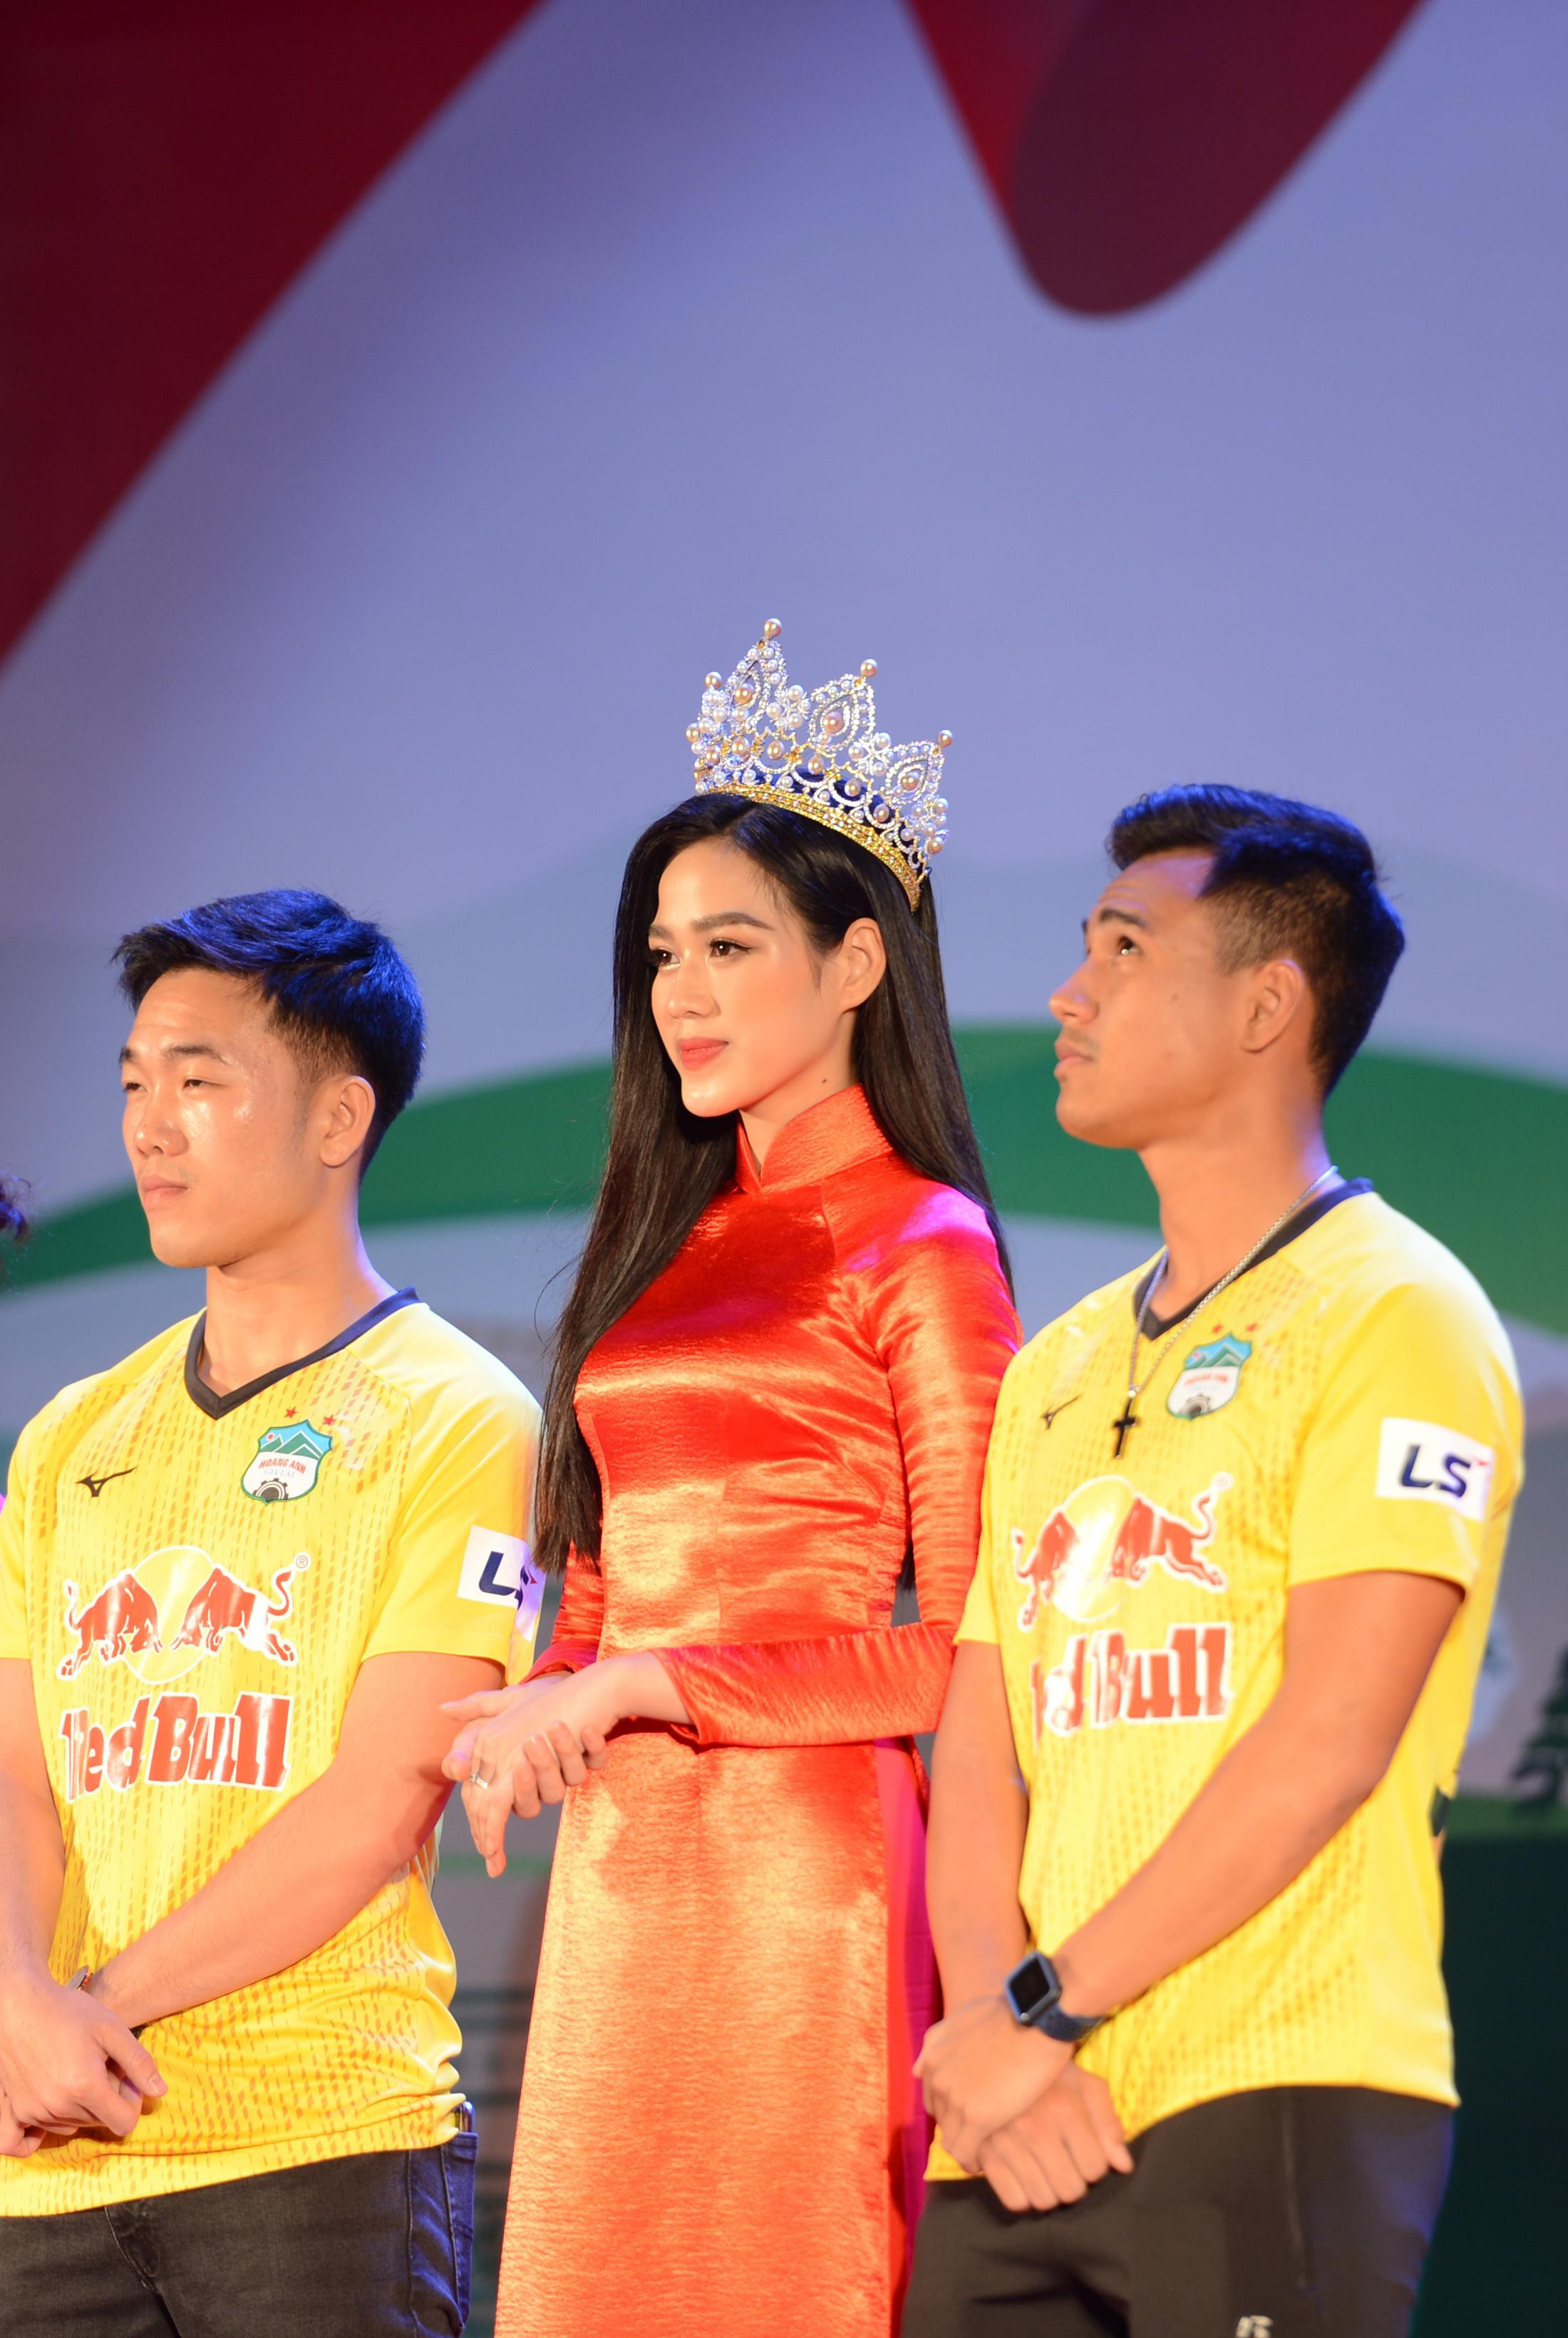 Các fans hy vọng với sự chuẩn bị chu đáo, Đỗ Thị Hà sẽ đạt được thành tích ấn tượng tại cuộc thi Miss World 2021, nối tiếp thành công của đàn chị Lương Thùy Linh. Ảnh: Dương Triều.